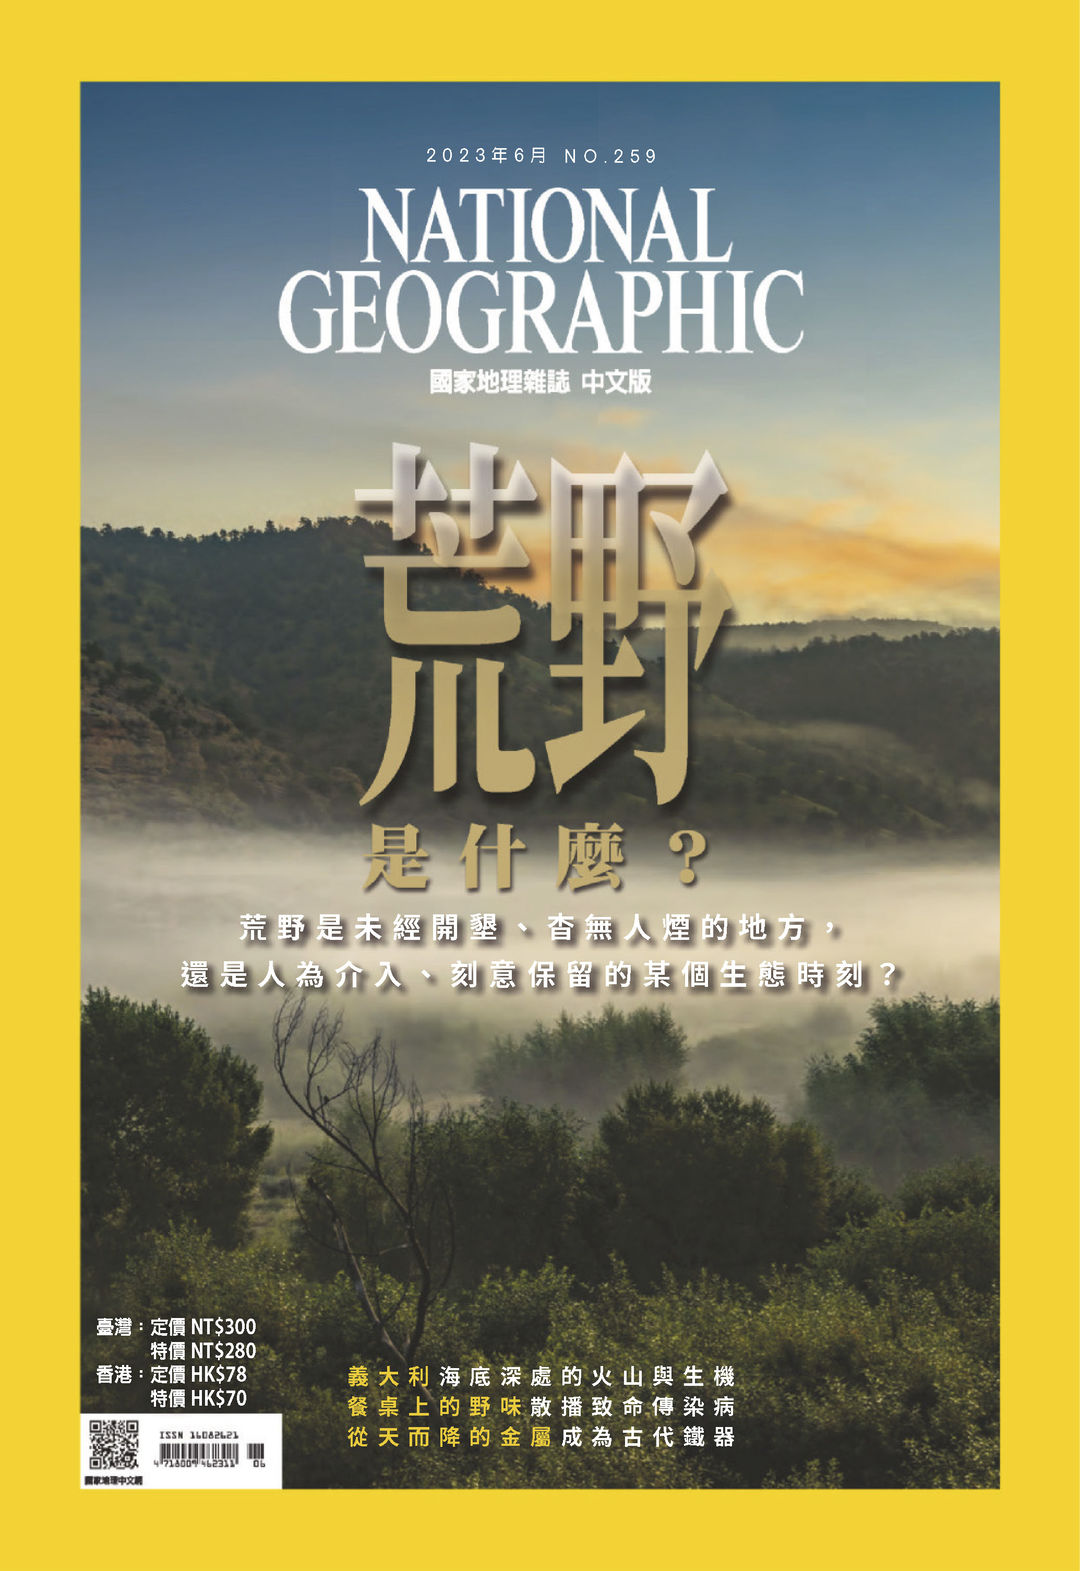 环球人文地理杂志2017年12期-发表作品